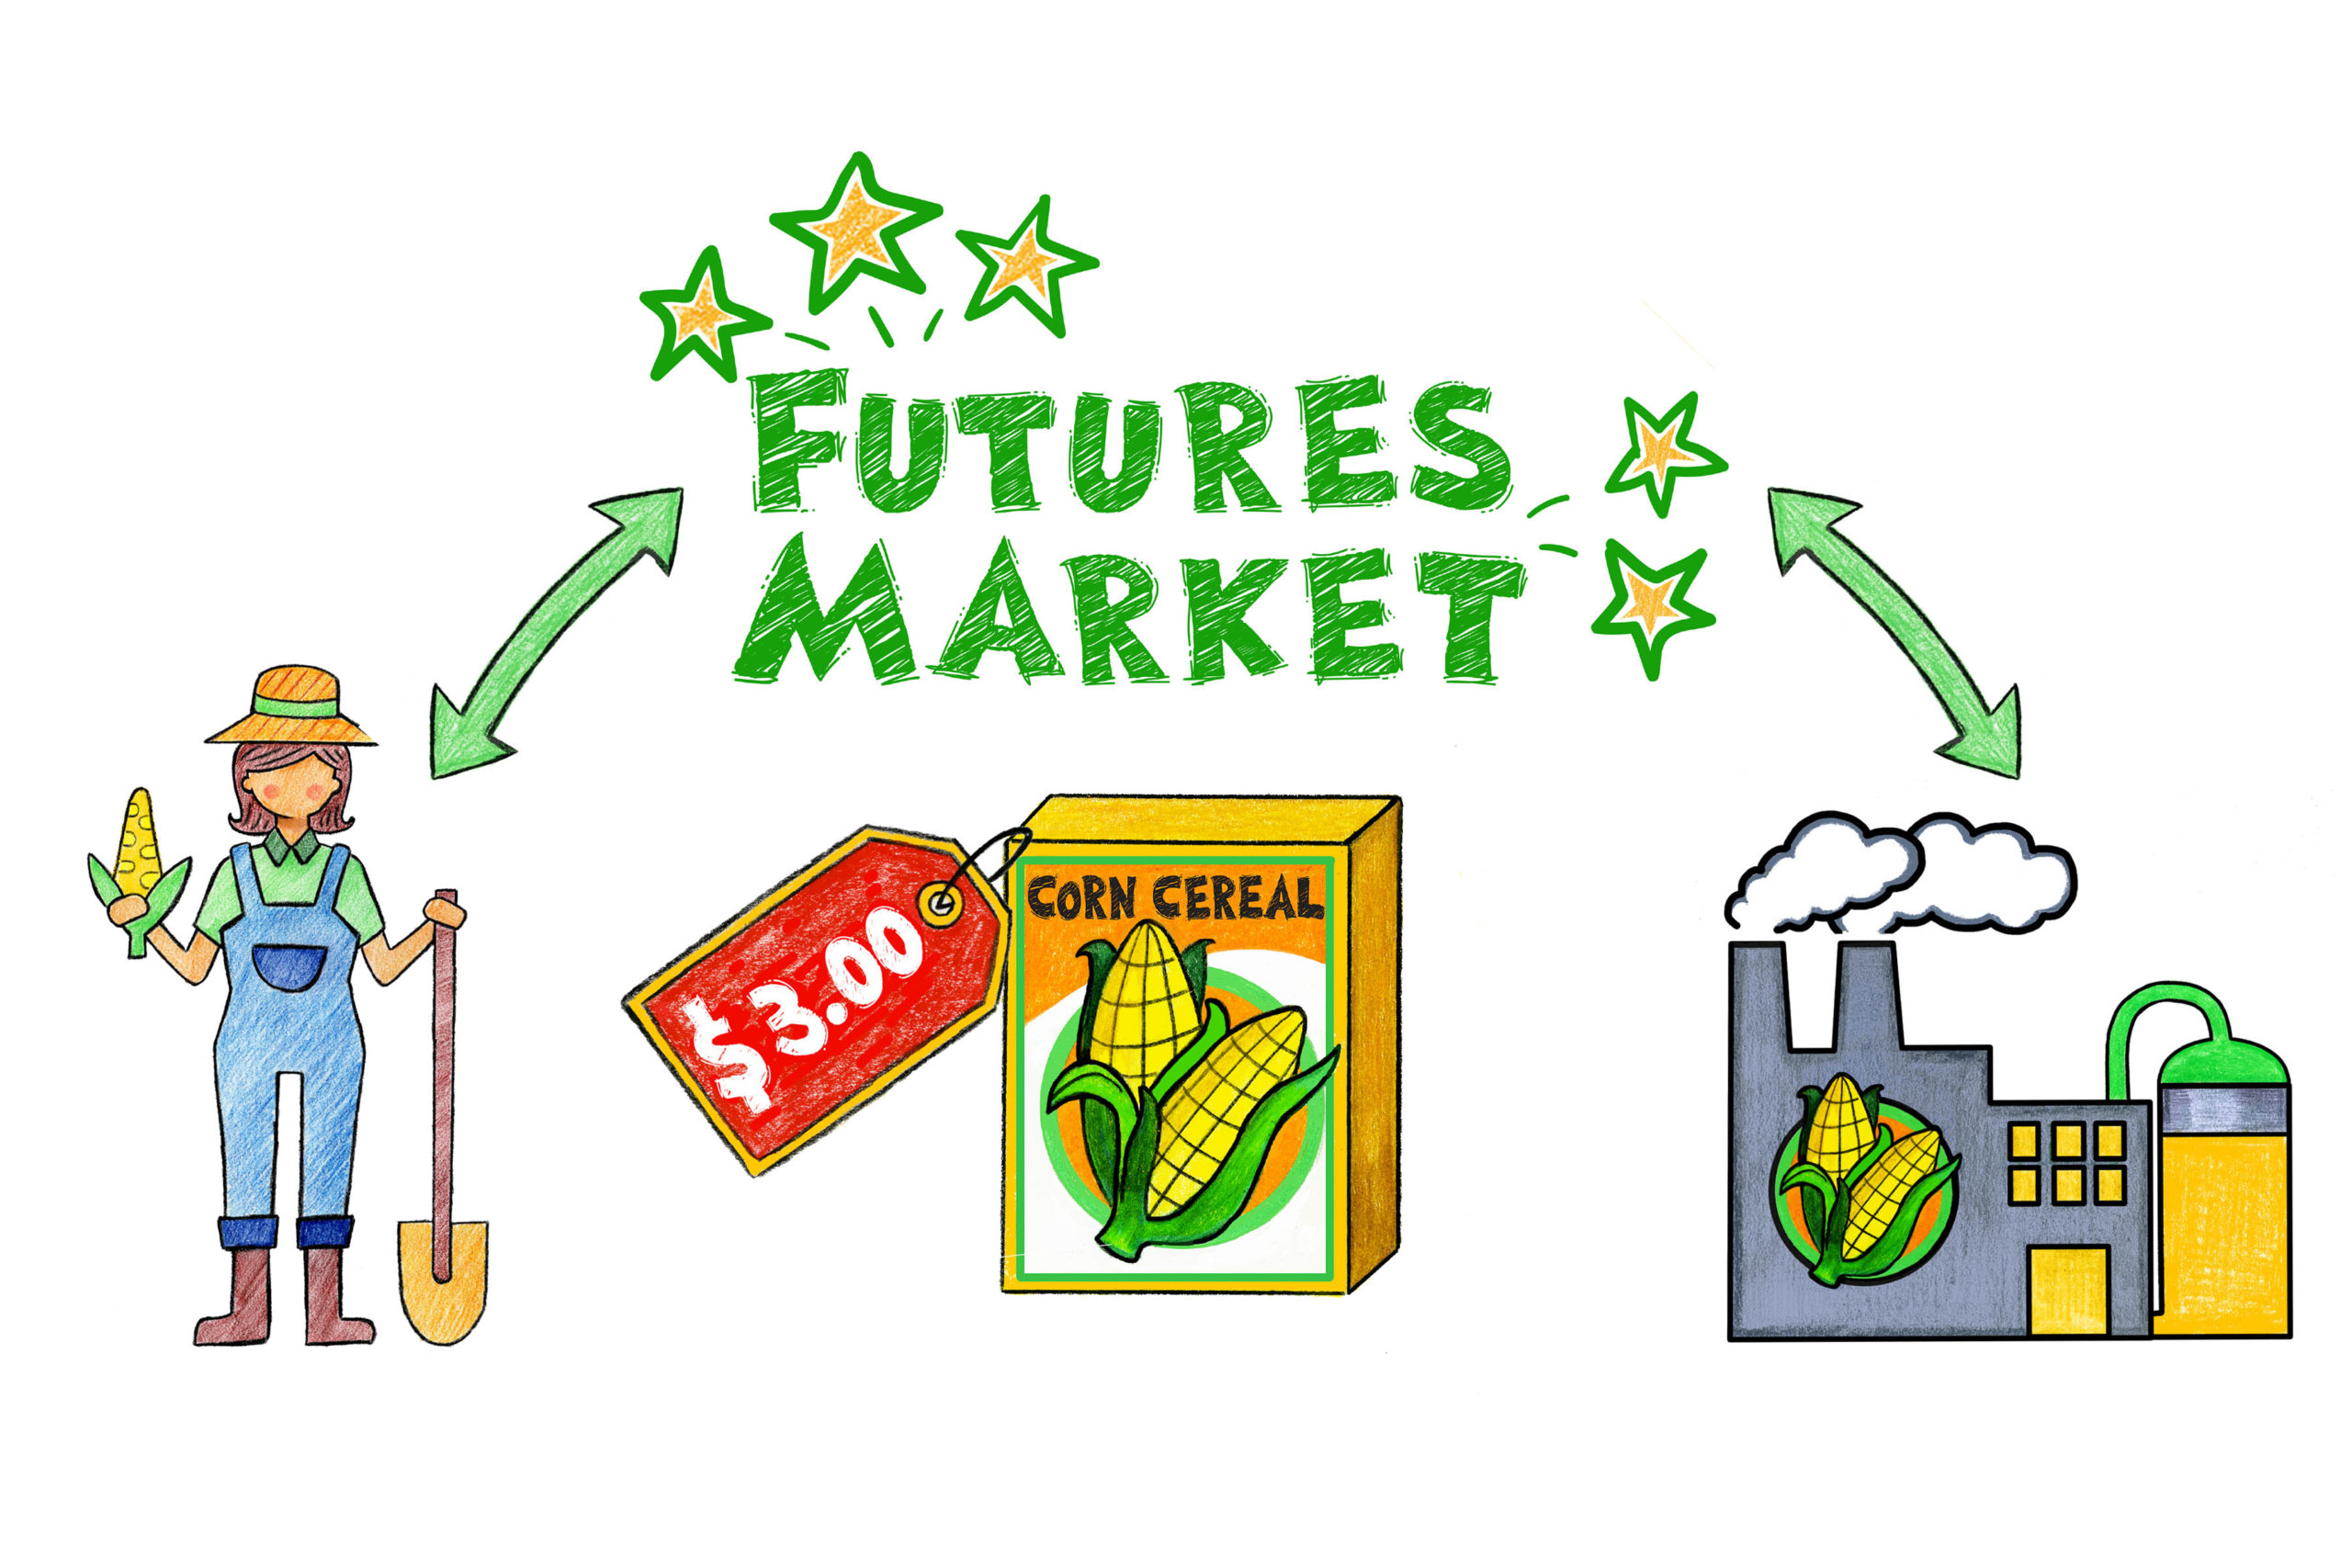 Futures market